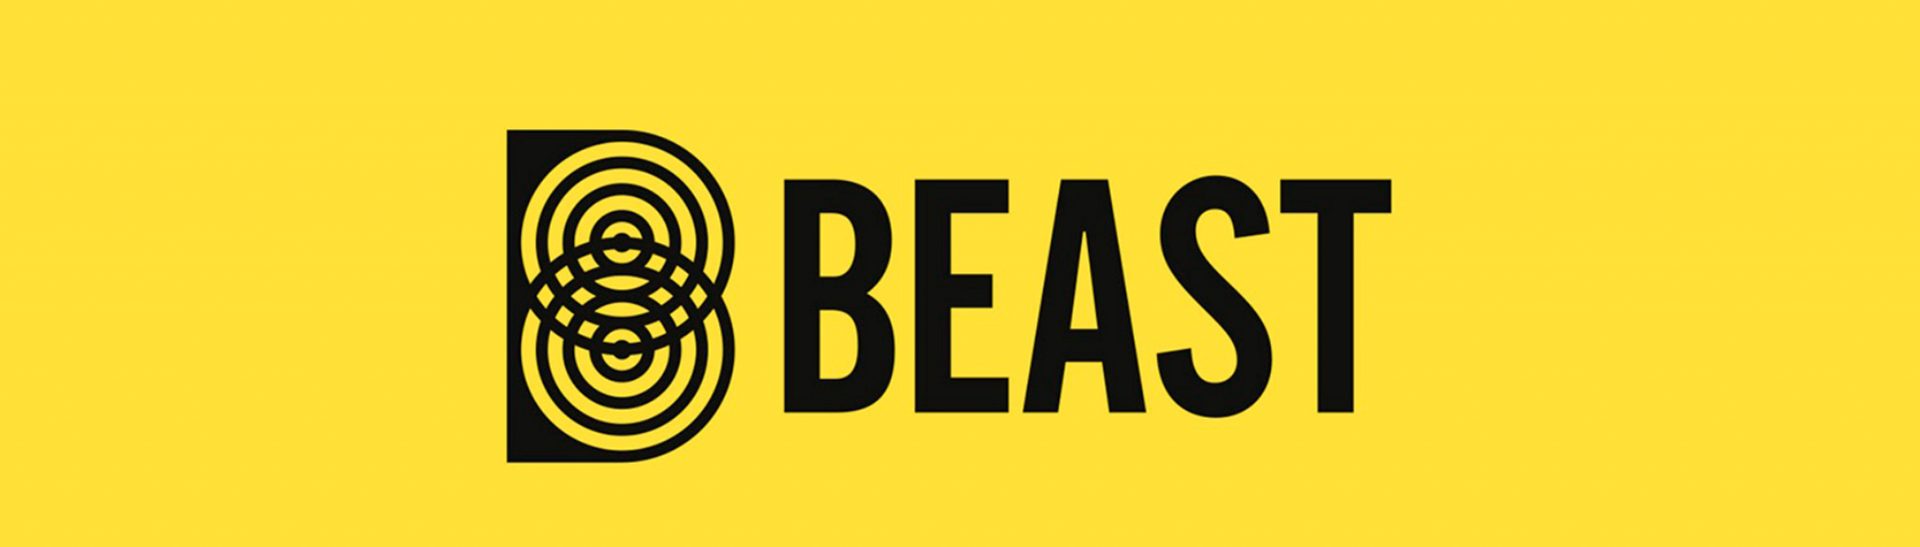 BEAST reconoció a BLAST de nuestro Departamento de Música como uno de sus aliados estratégicos y cuyos proyectos recomiendan.